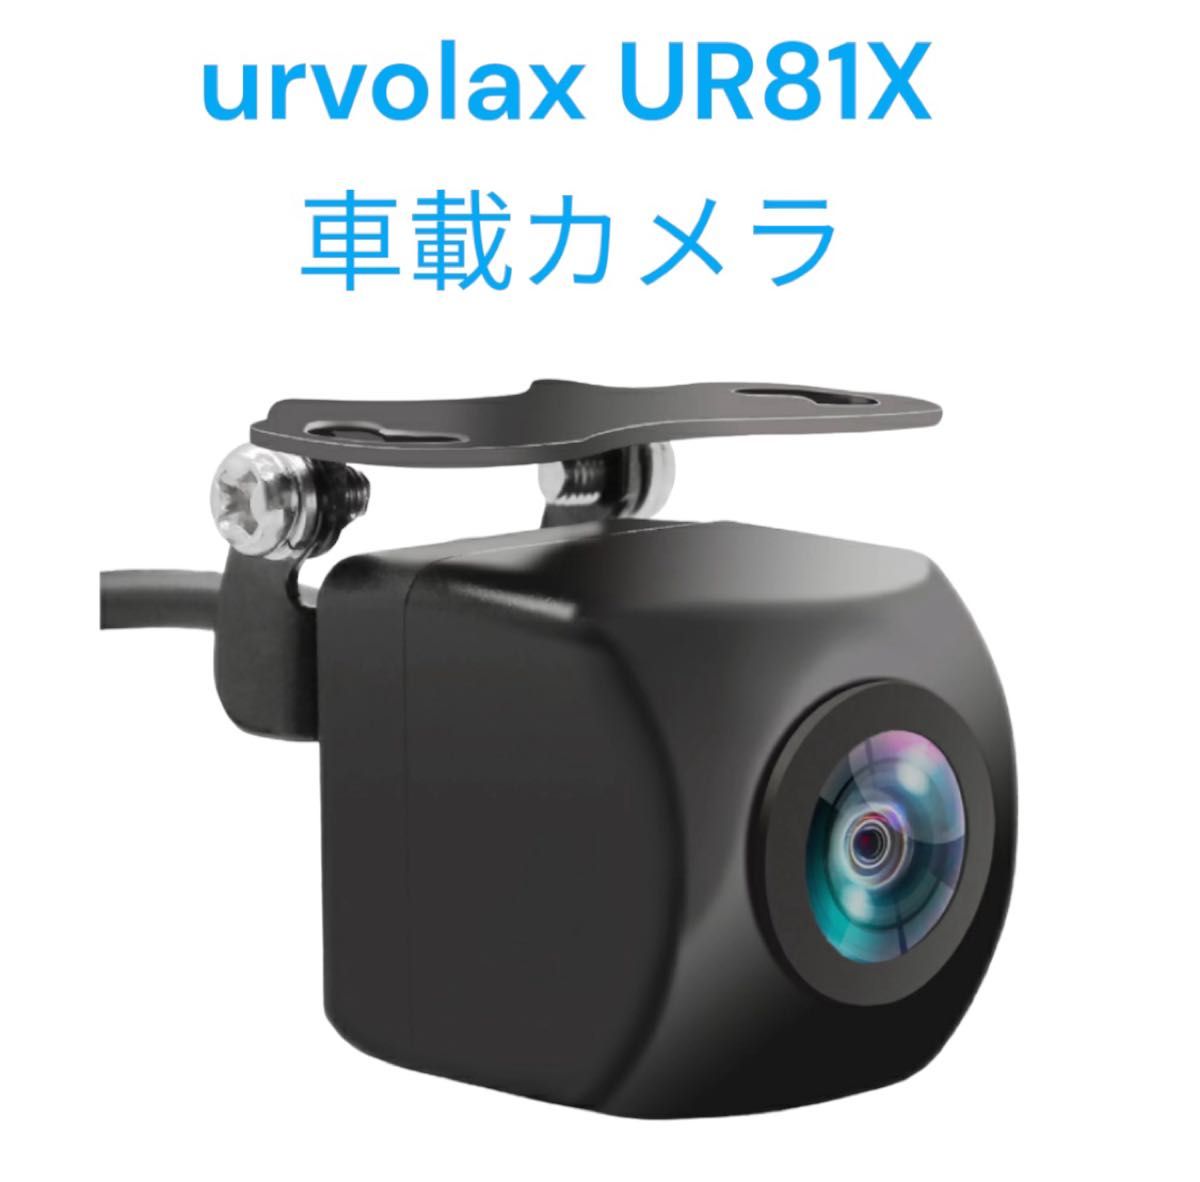 URVOLAX UR81X 車載カメラ